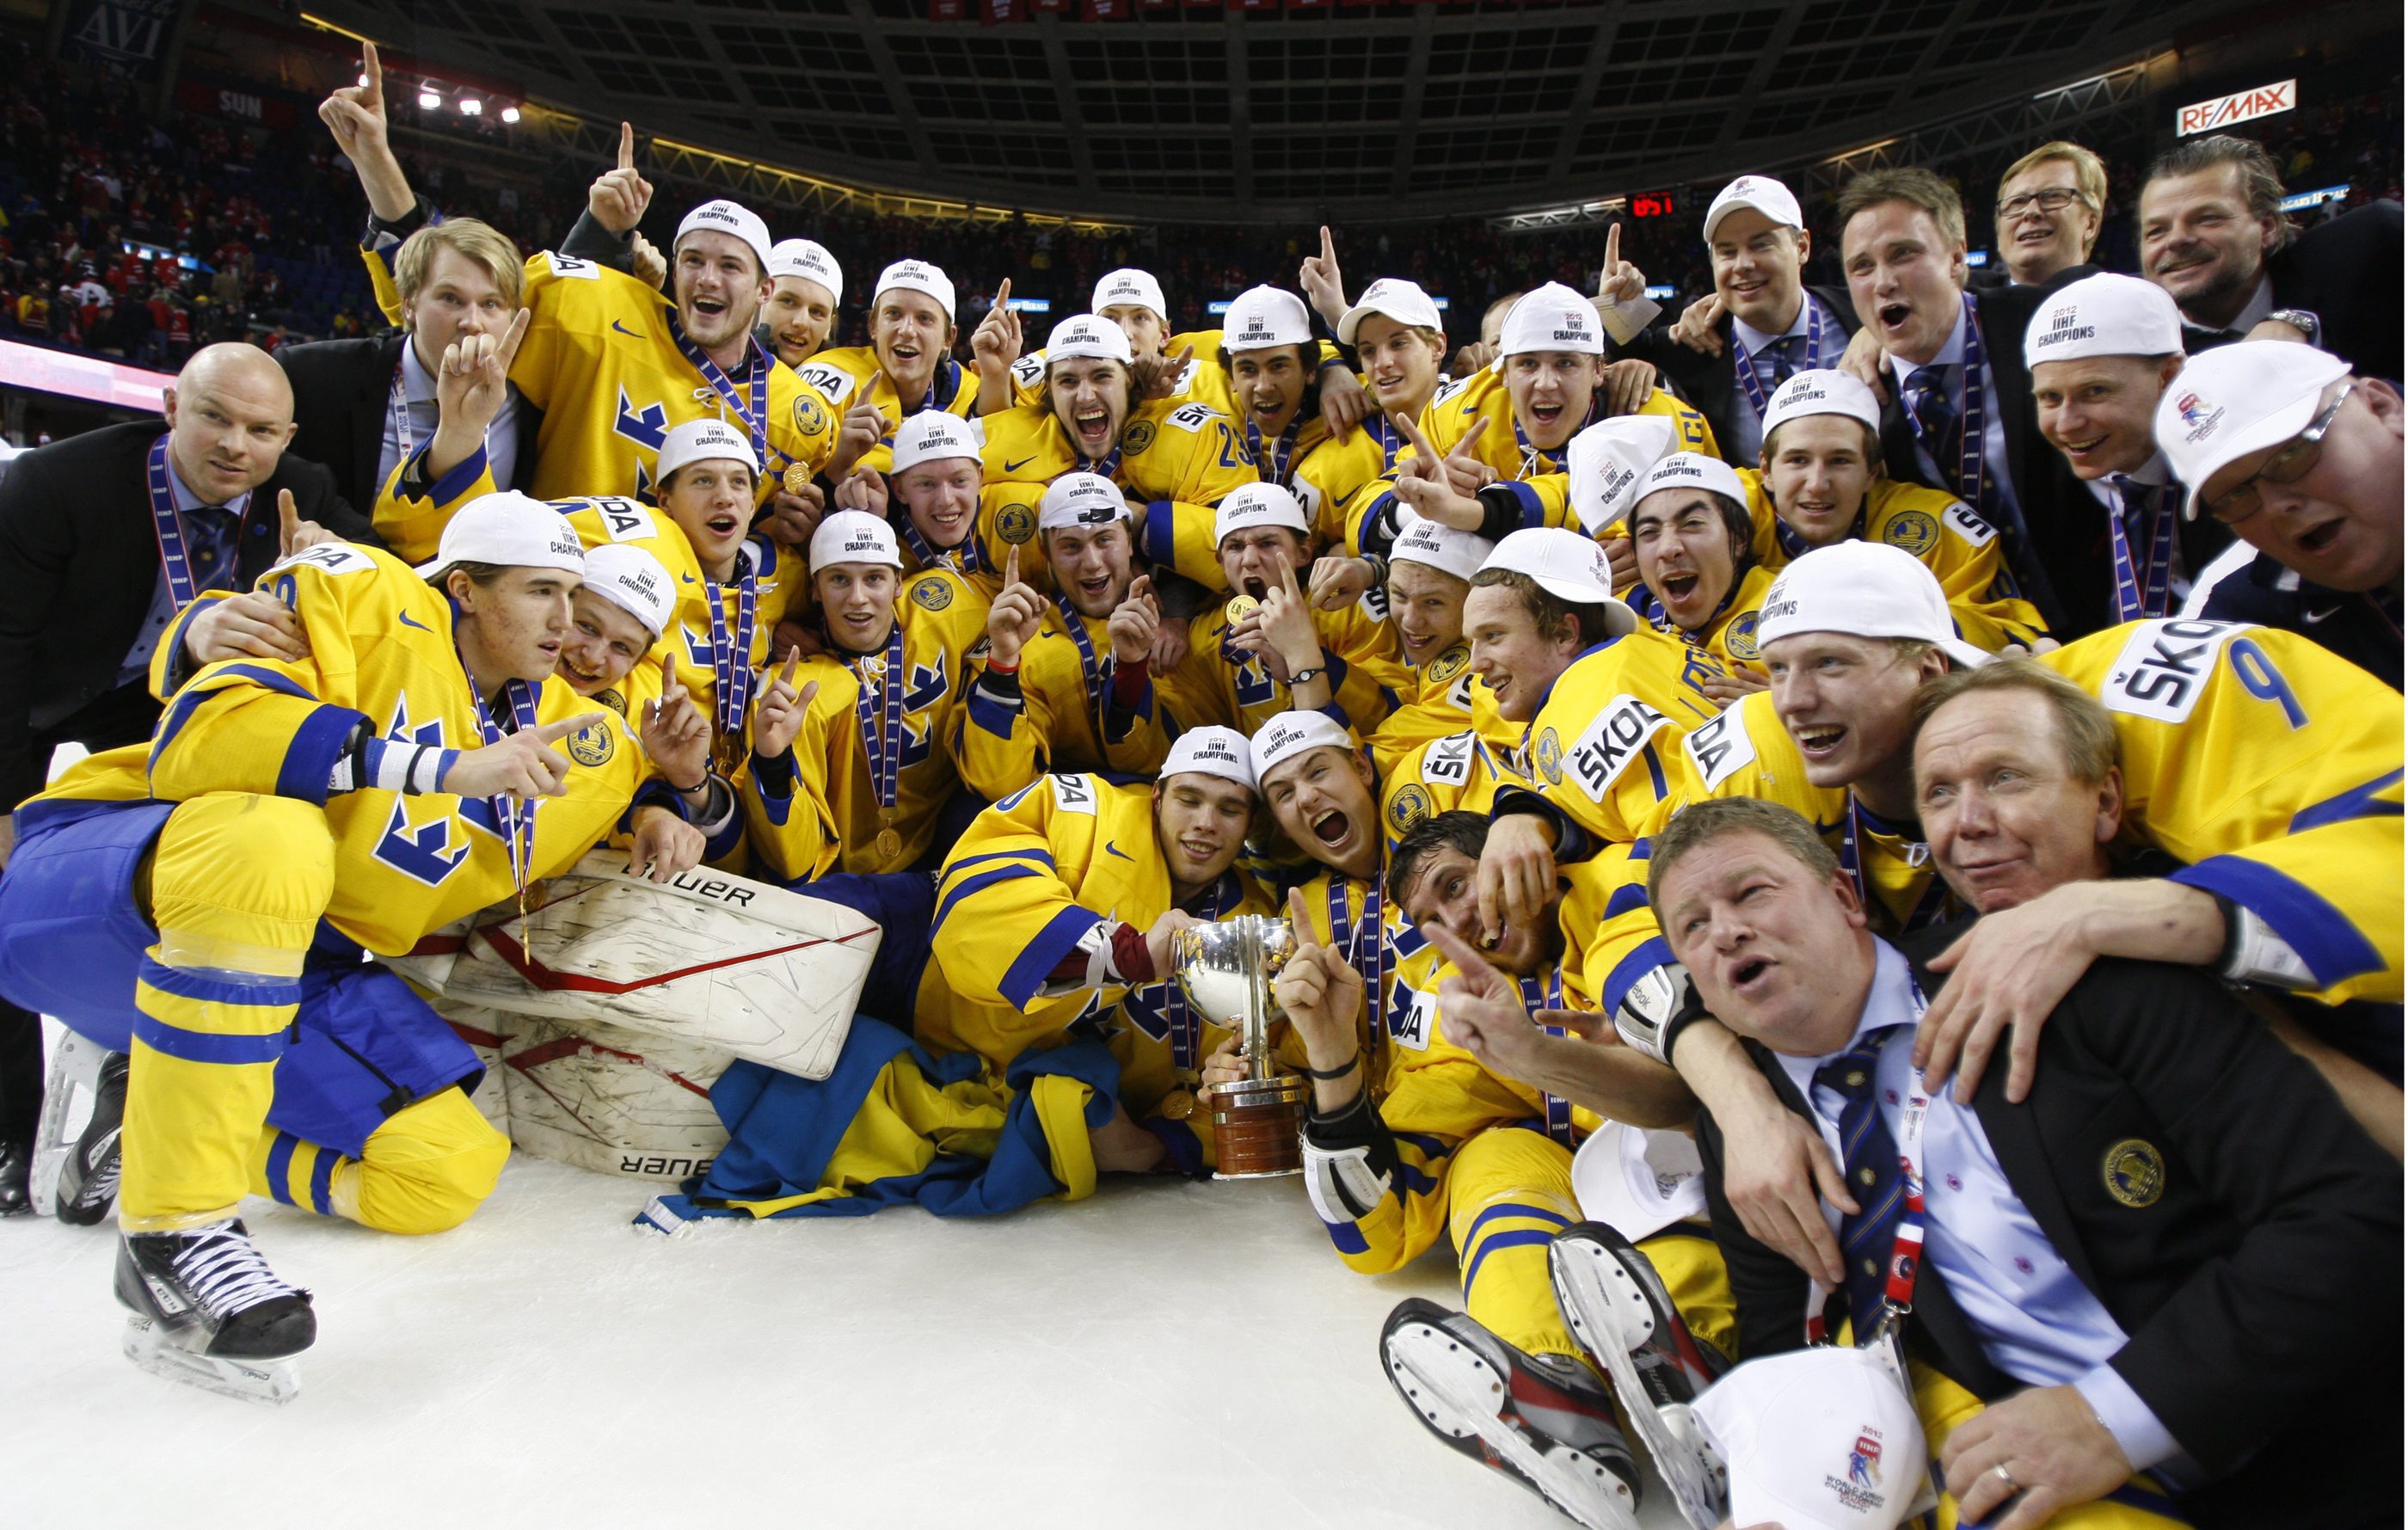 2012 inleddes med ett svenskt JVM-guld. Det första sedan 1981.